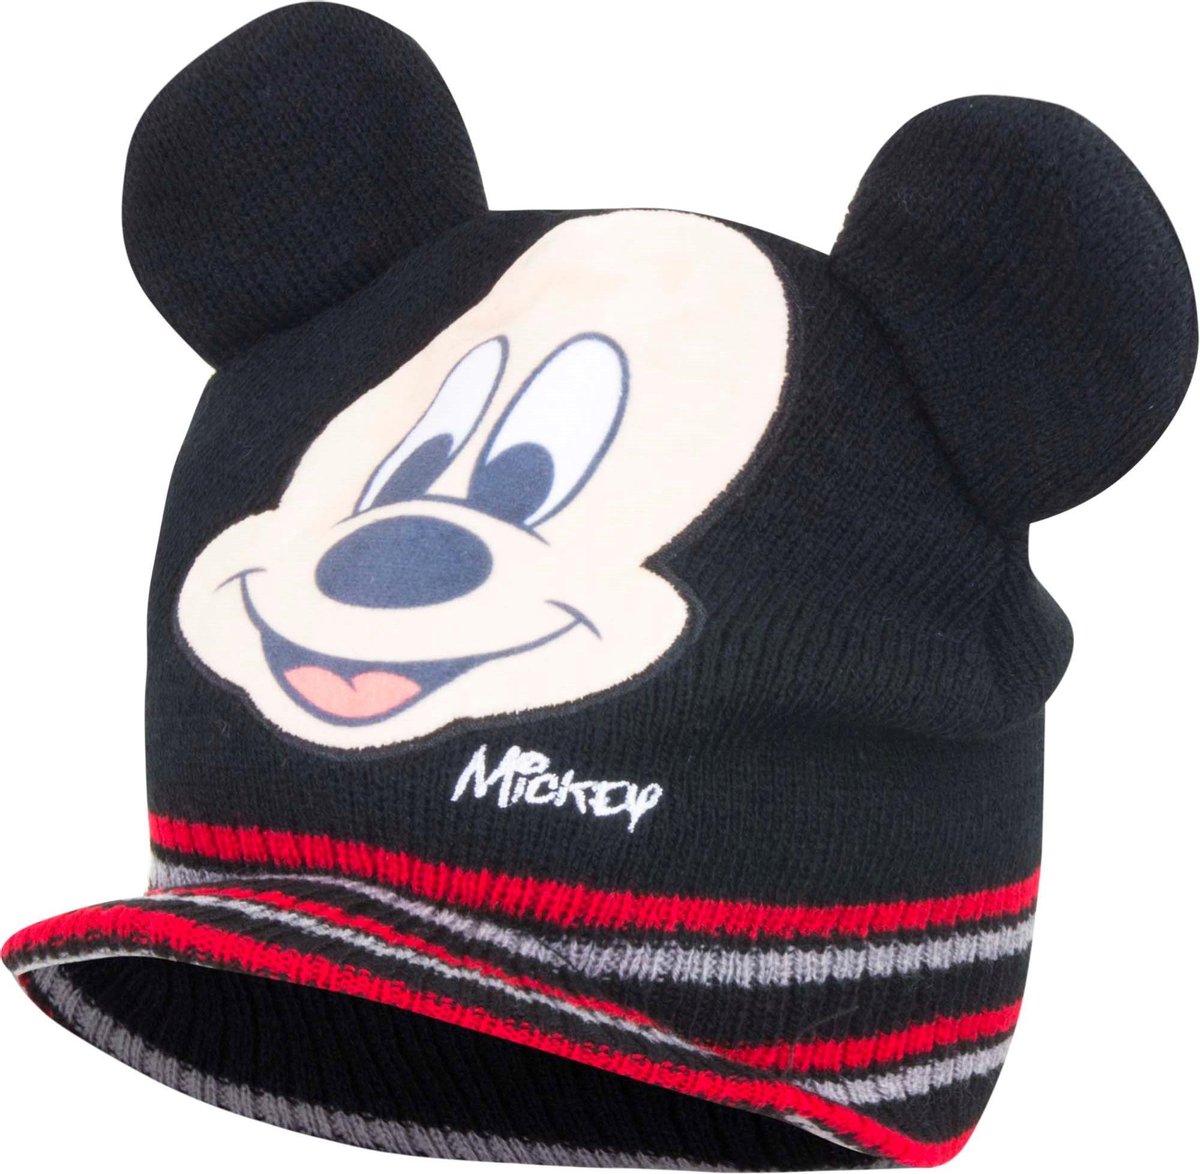 Baby muts|mickey mouse|kleur zwart maat 48 cm|Bonnet bébé Mickey Mouse couleur noir taille 48 cm